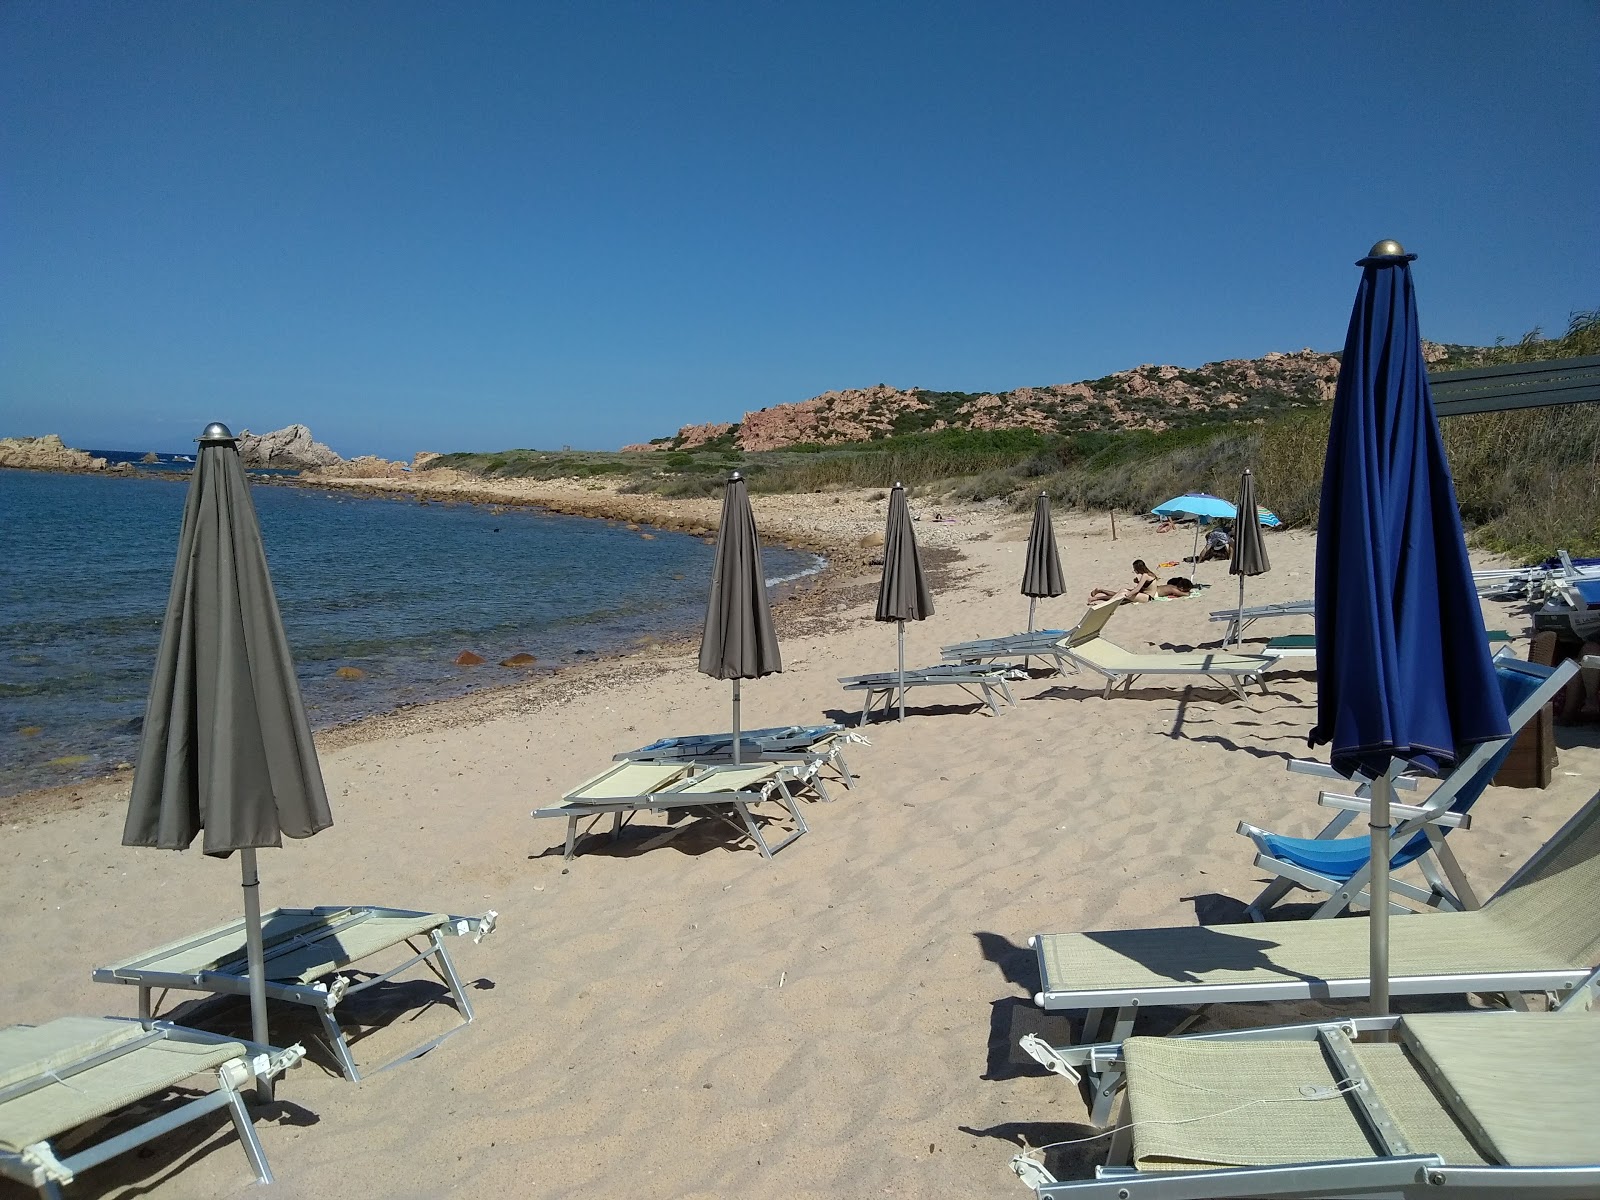 Photo of Spiaggia Li Caneddi located in natural area